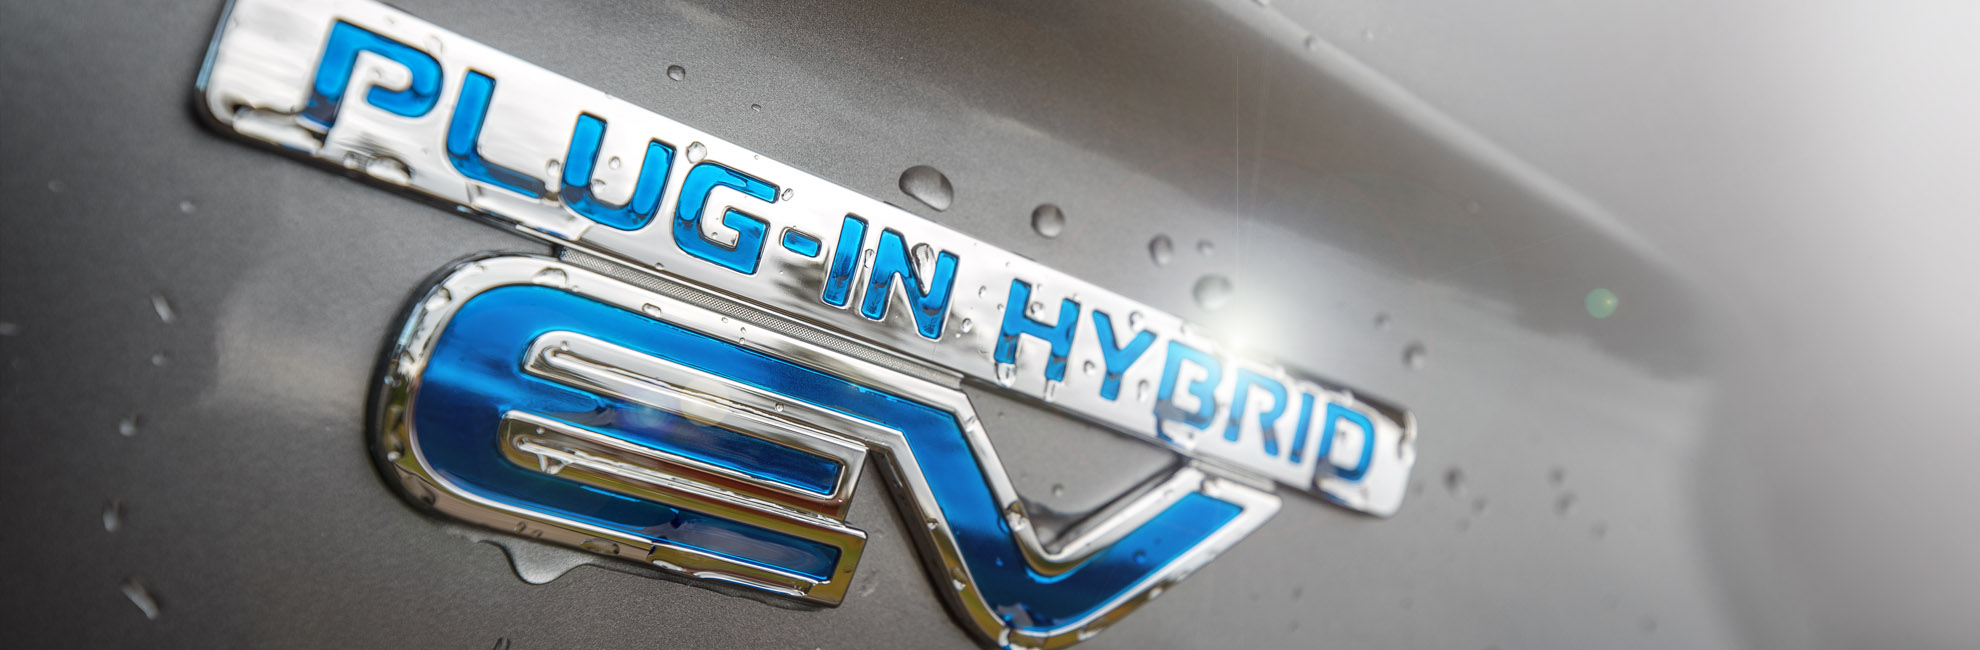 Plug-in-hybrid-logo